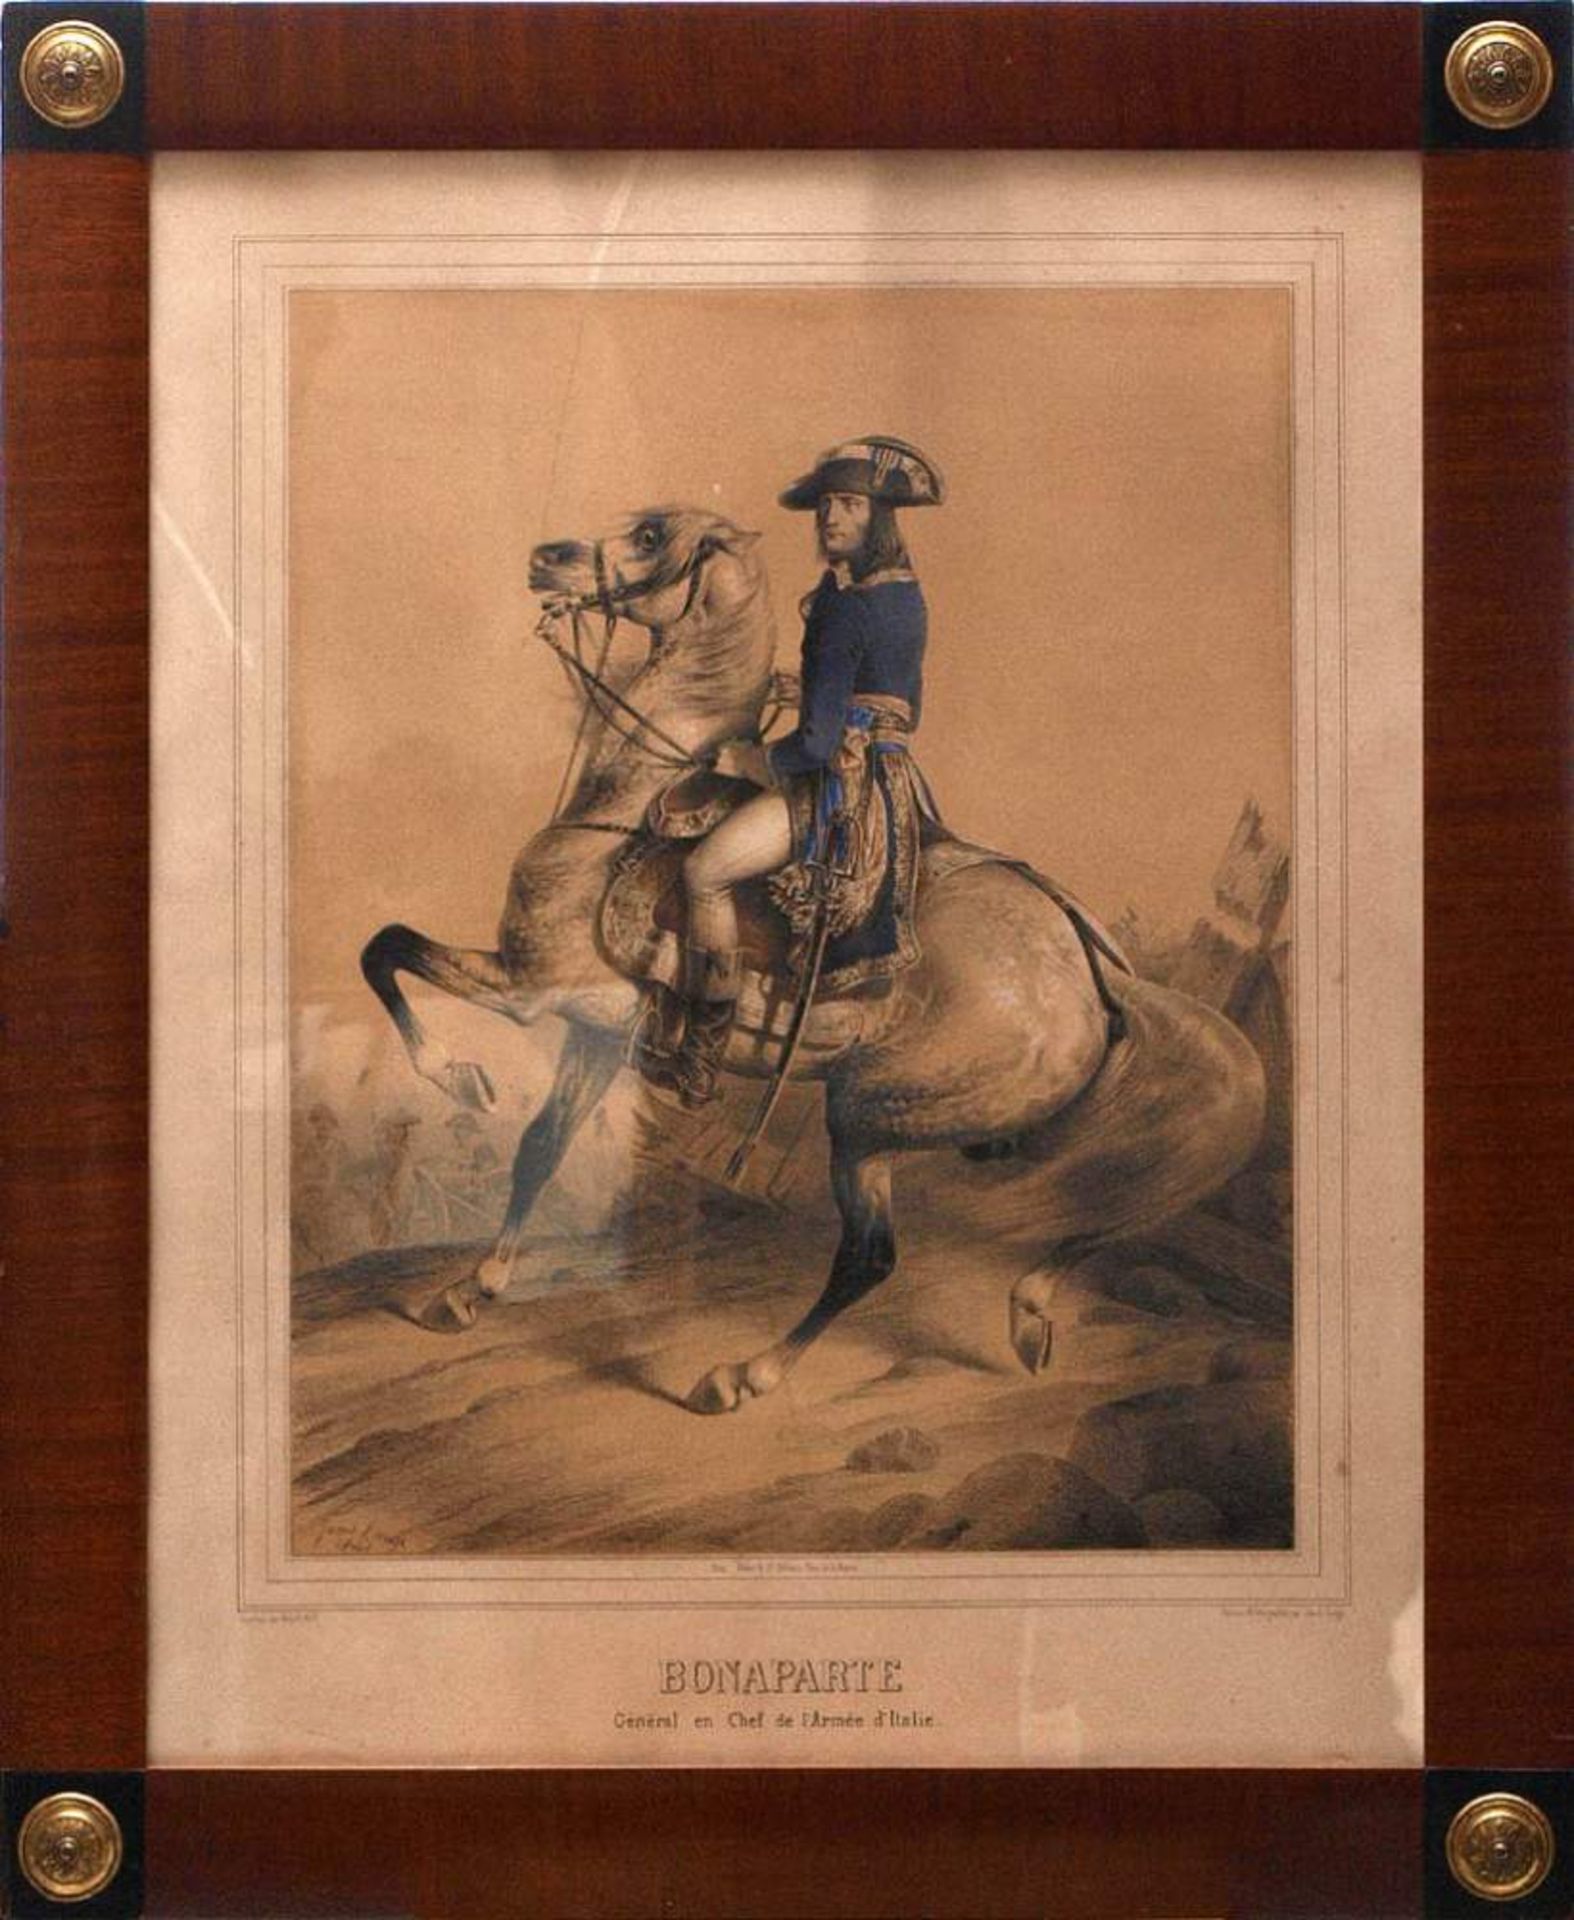 Janet-Lange, Ange Louis, 1815 - 1872Bildnis von Napoleon Bonaparte zu Pferd, hinter ihm Soldaten